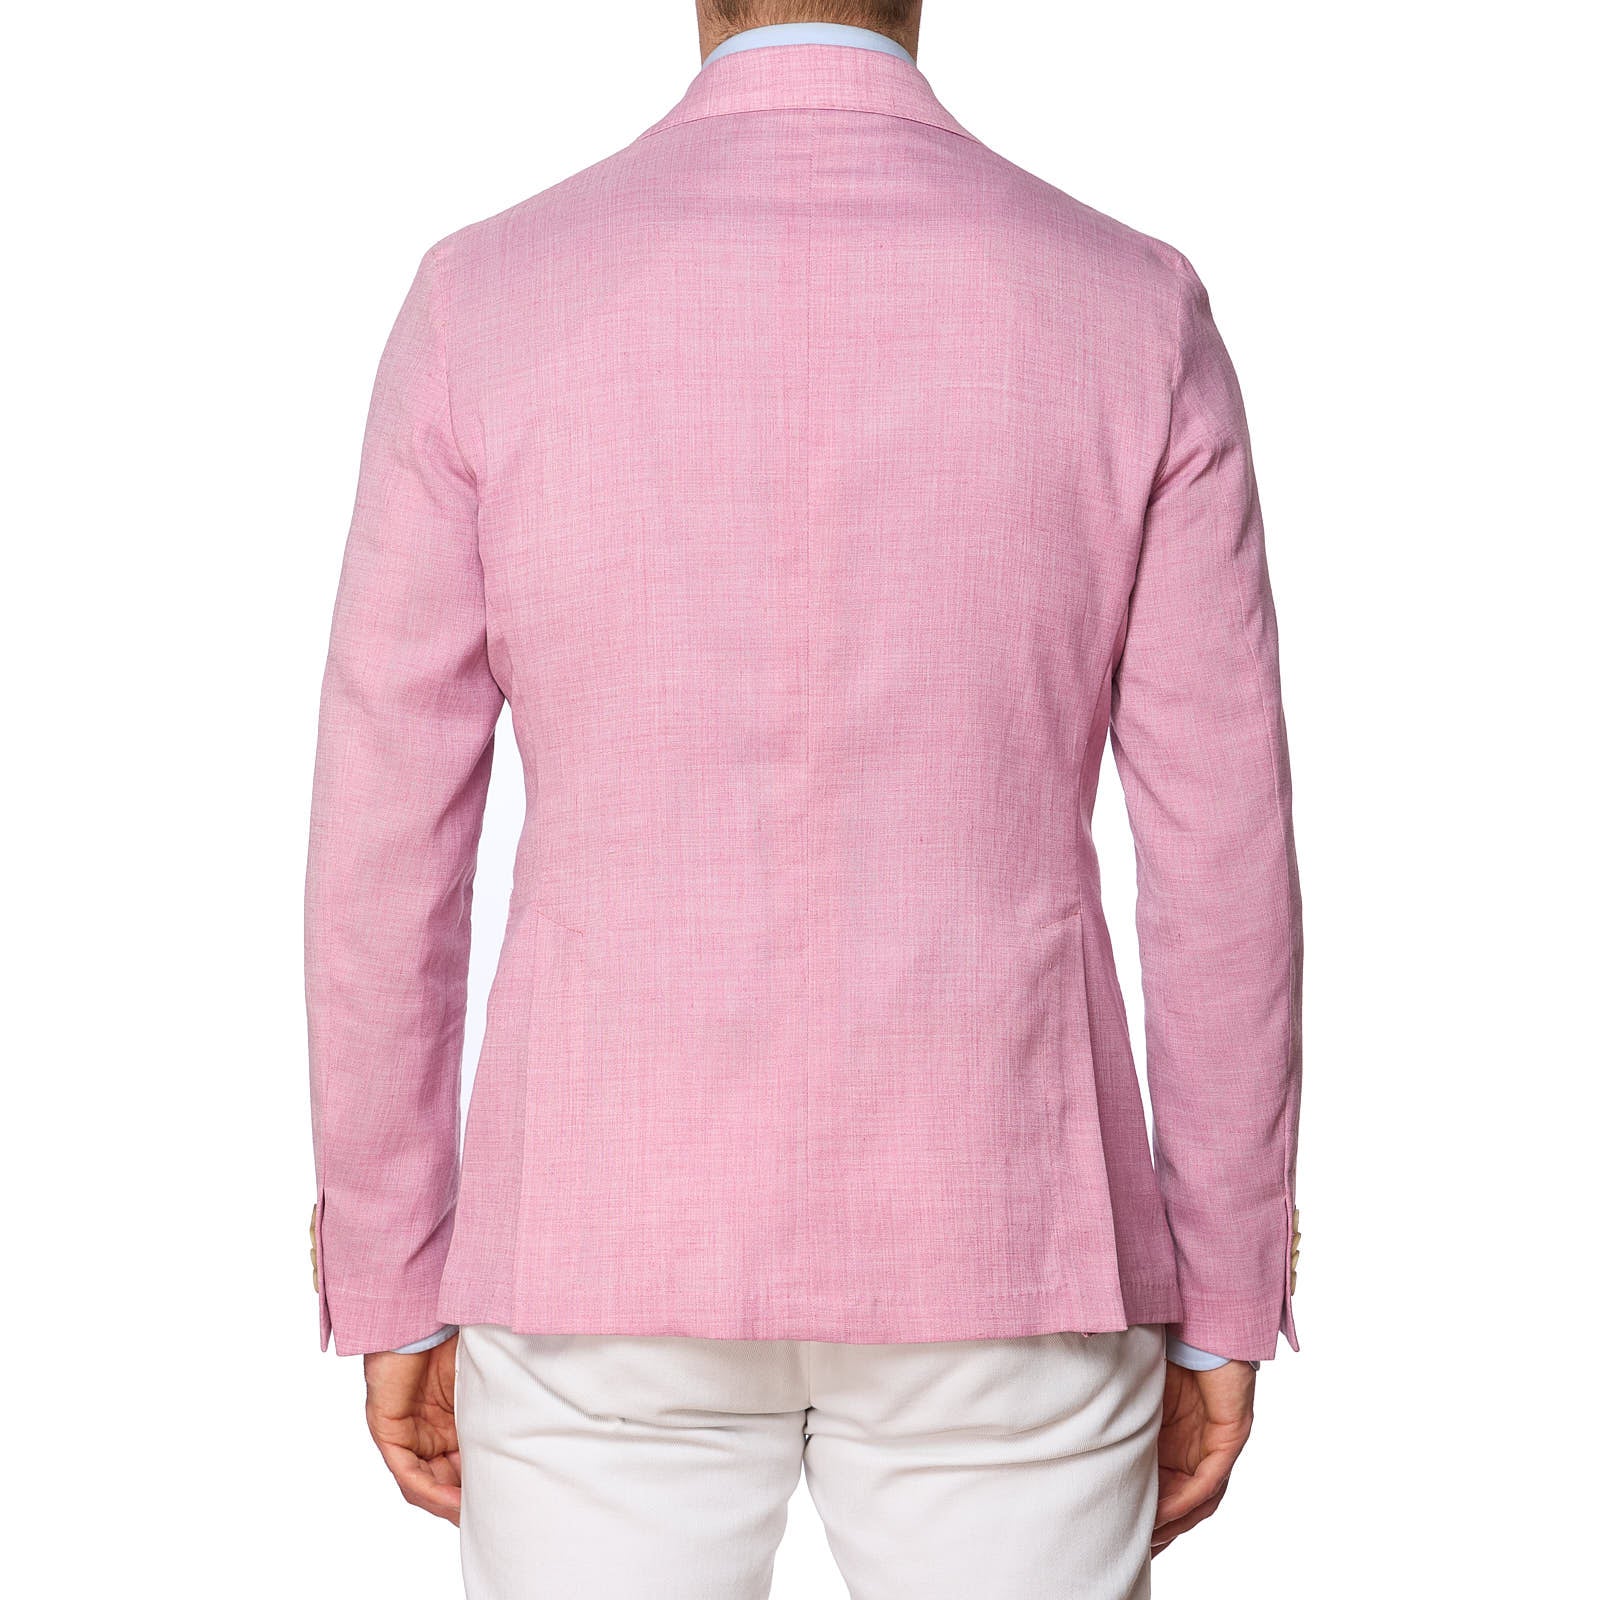 SARTORIA PARTENOPEA Pink Polyester-Linen Jacket EU 48 NEW US 38 Current Model